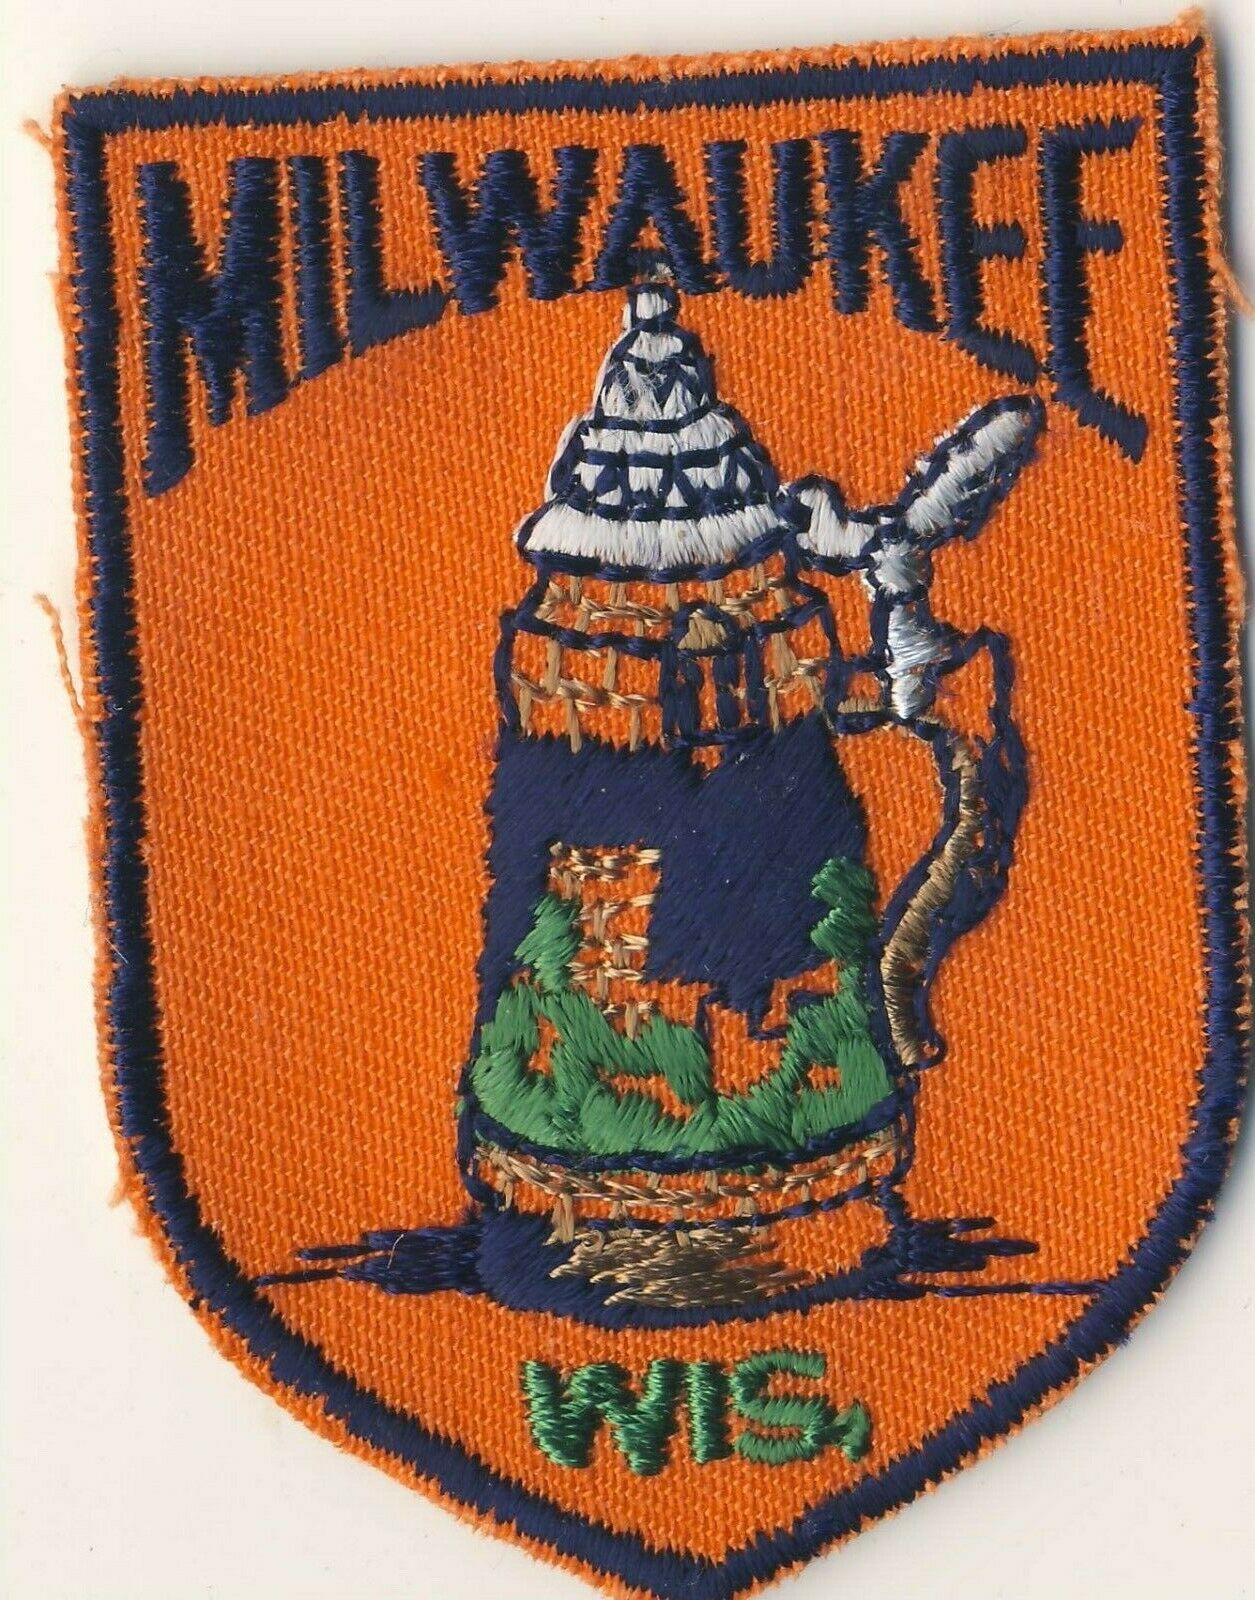 Milwaukee Wi Wisconsin 2.75" Souvenir Tourist Patch Beer Stein